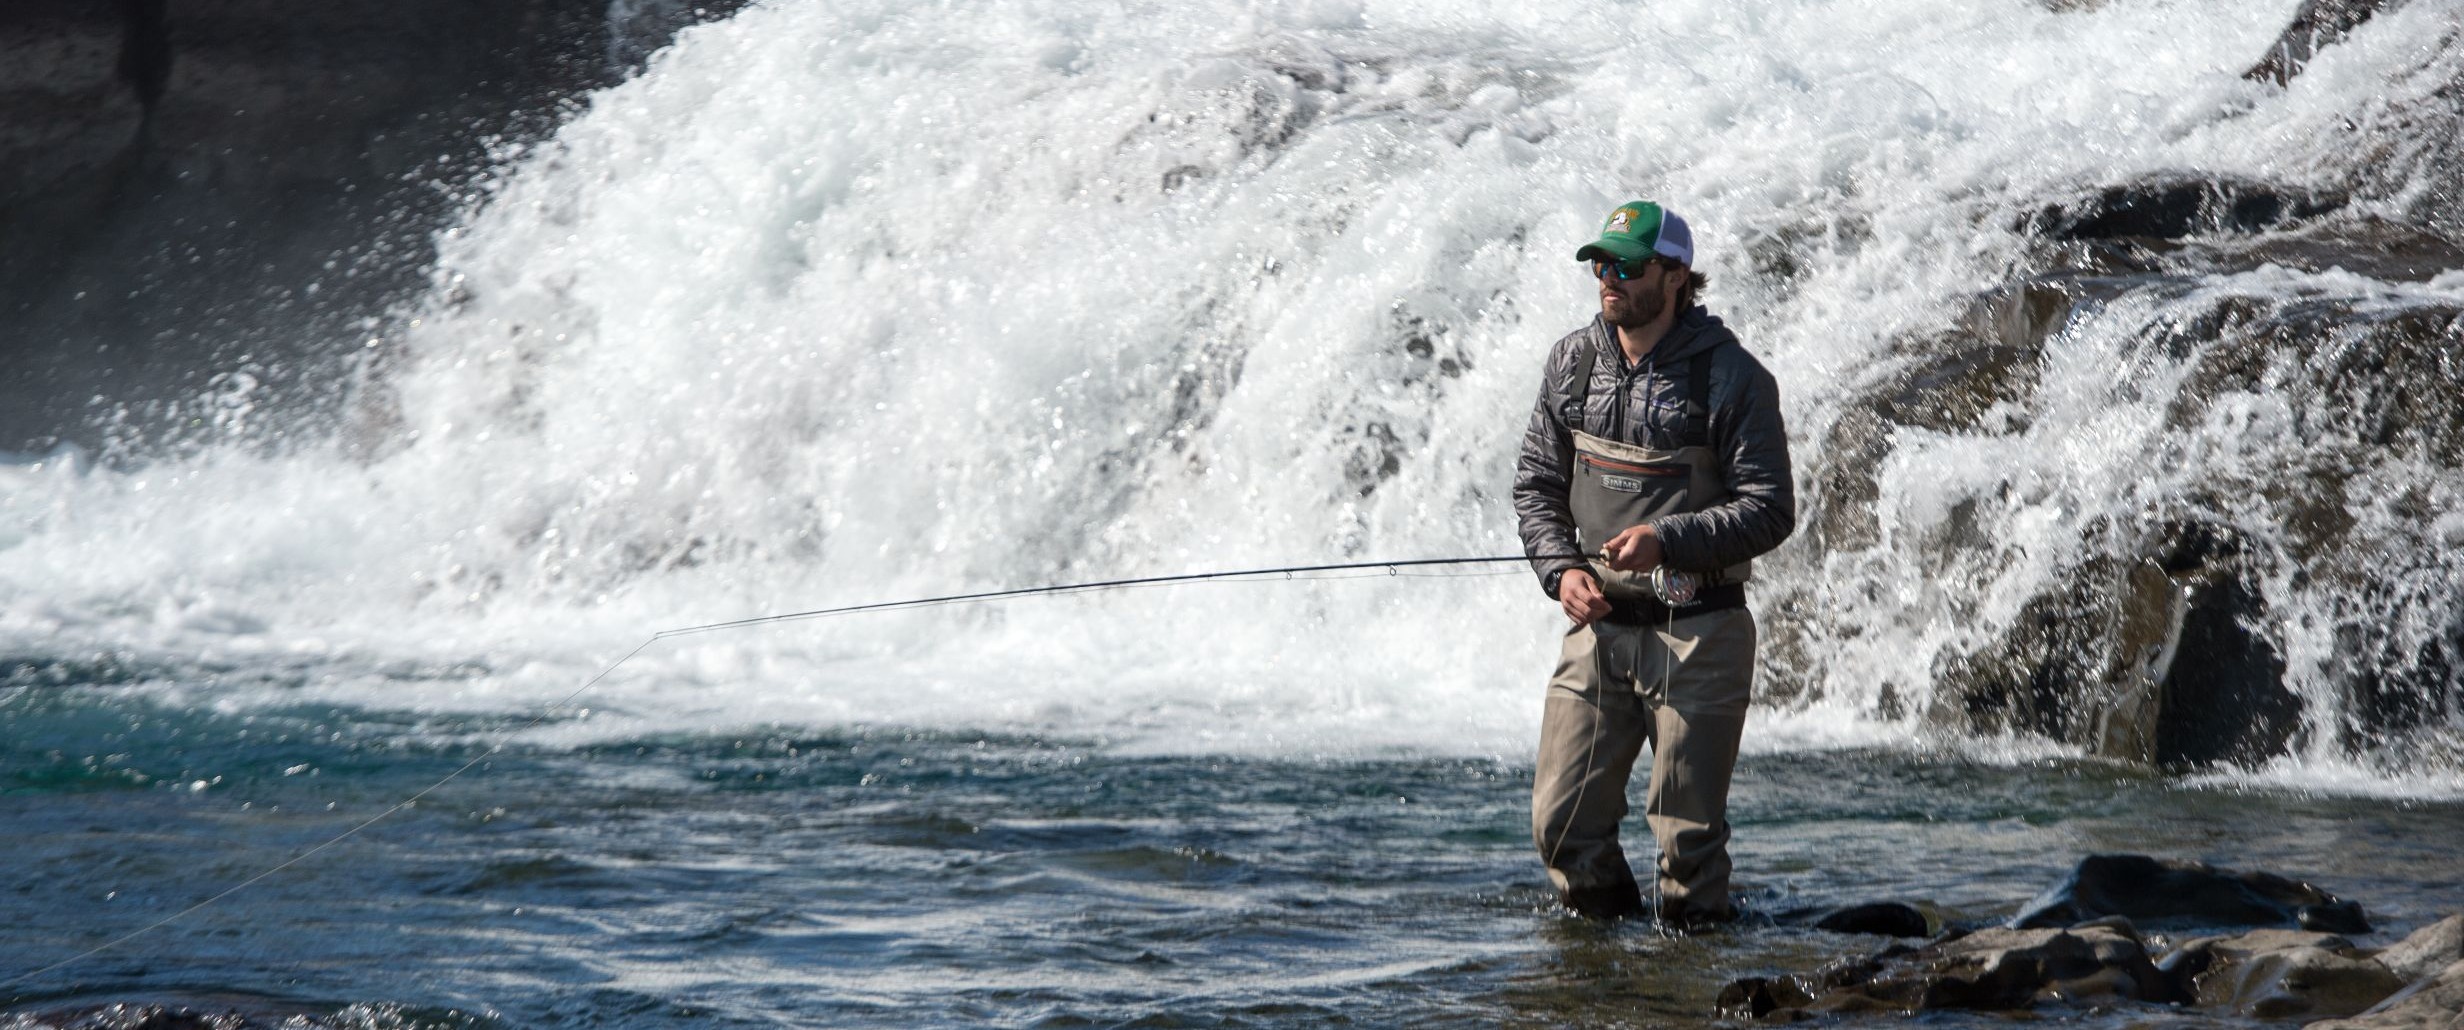 LIDAFISH Saltwater Bass Wear resistant Spinning Fishing Wheel 11+